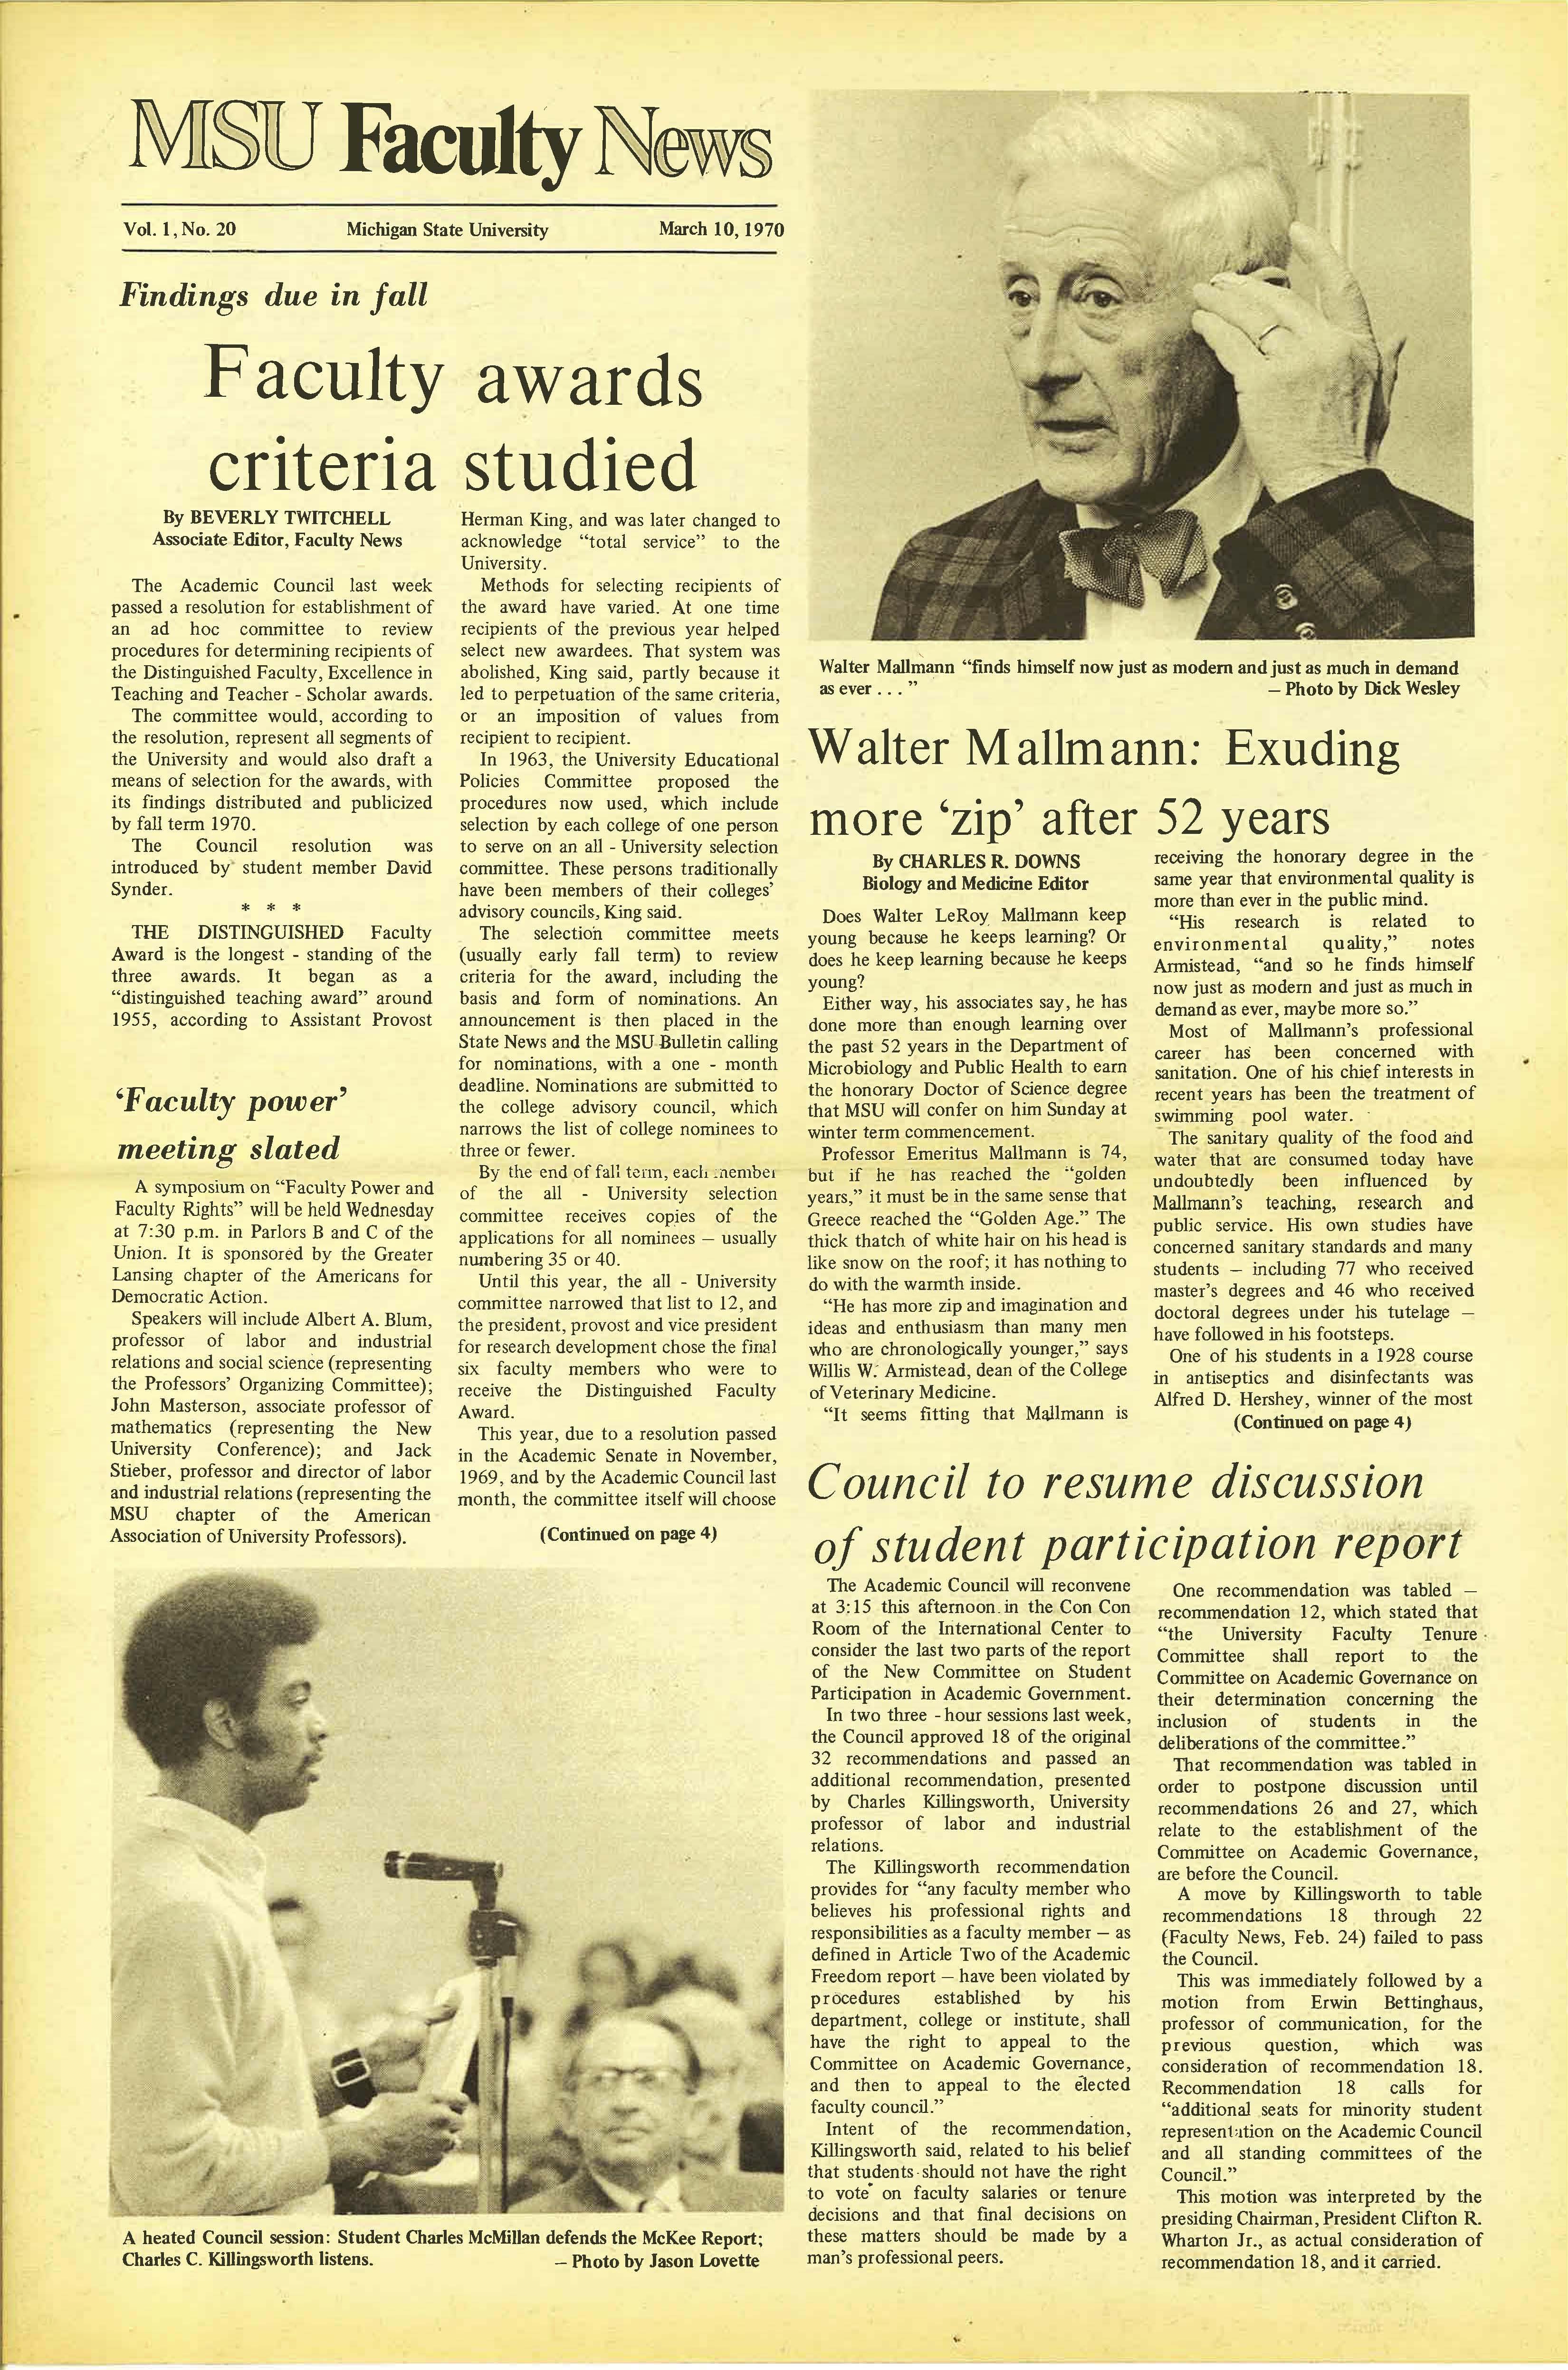 MSU News Bulletin, Vol. 1 No. 26, May 5, 1970